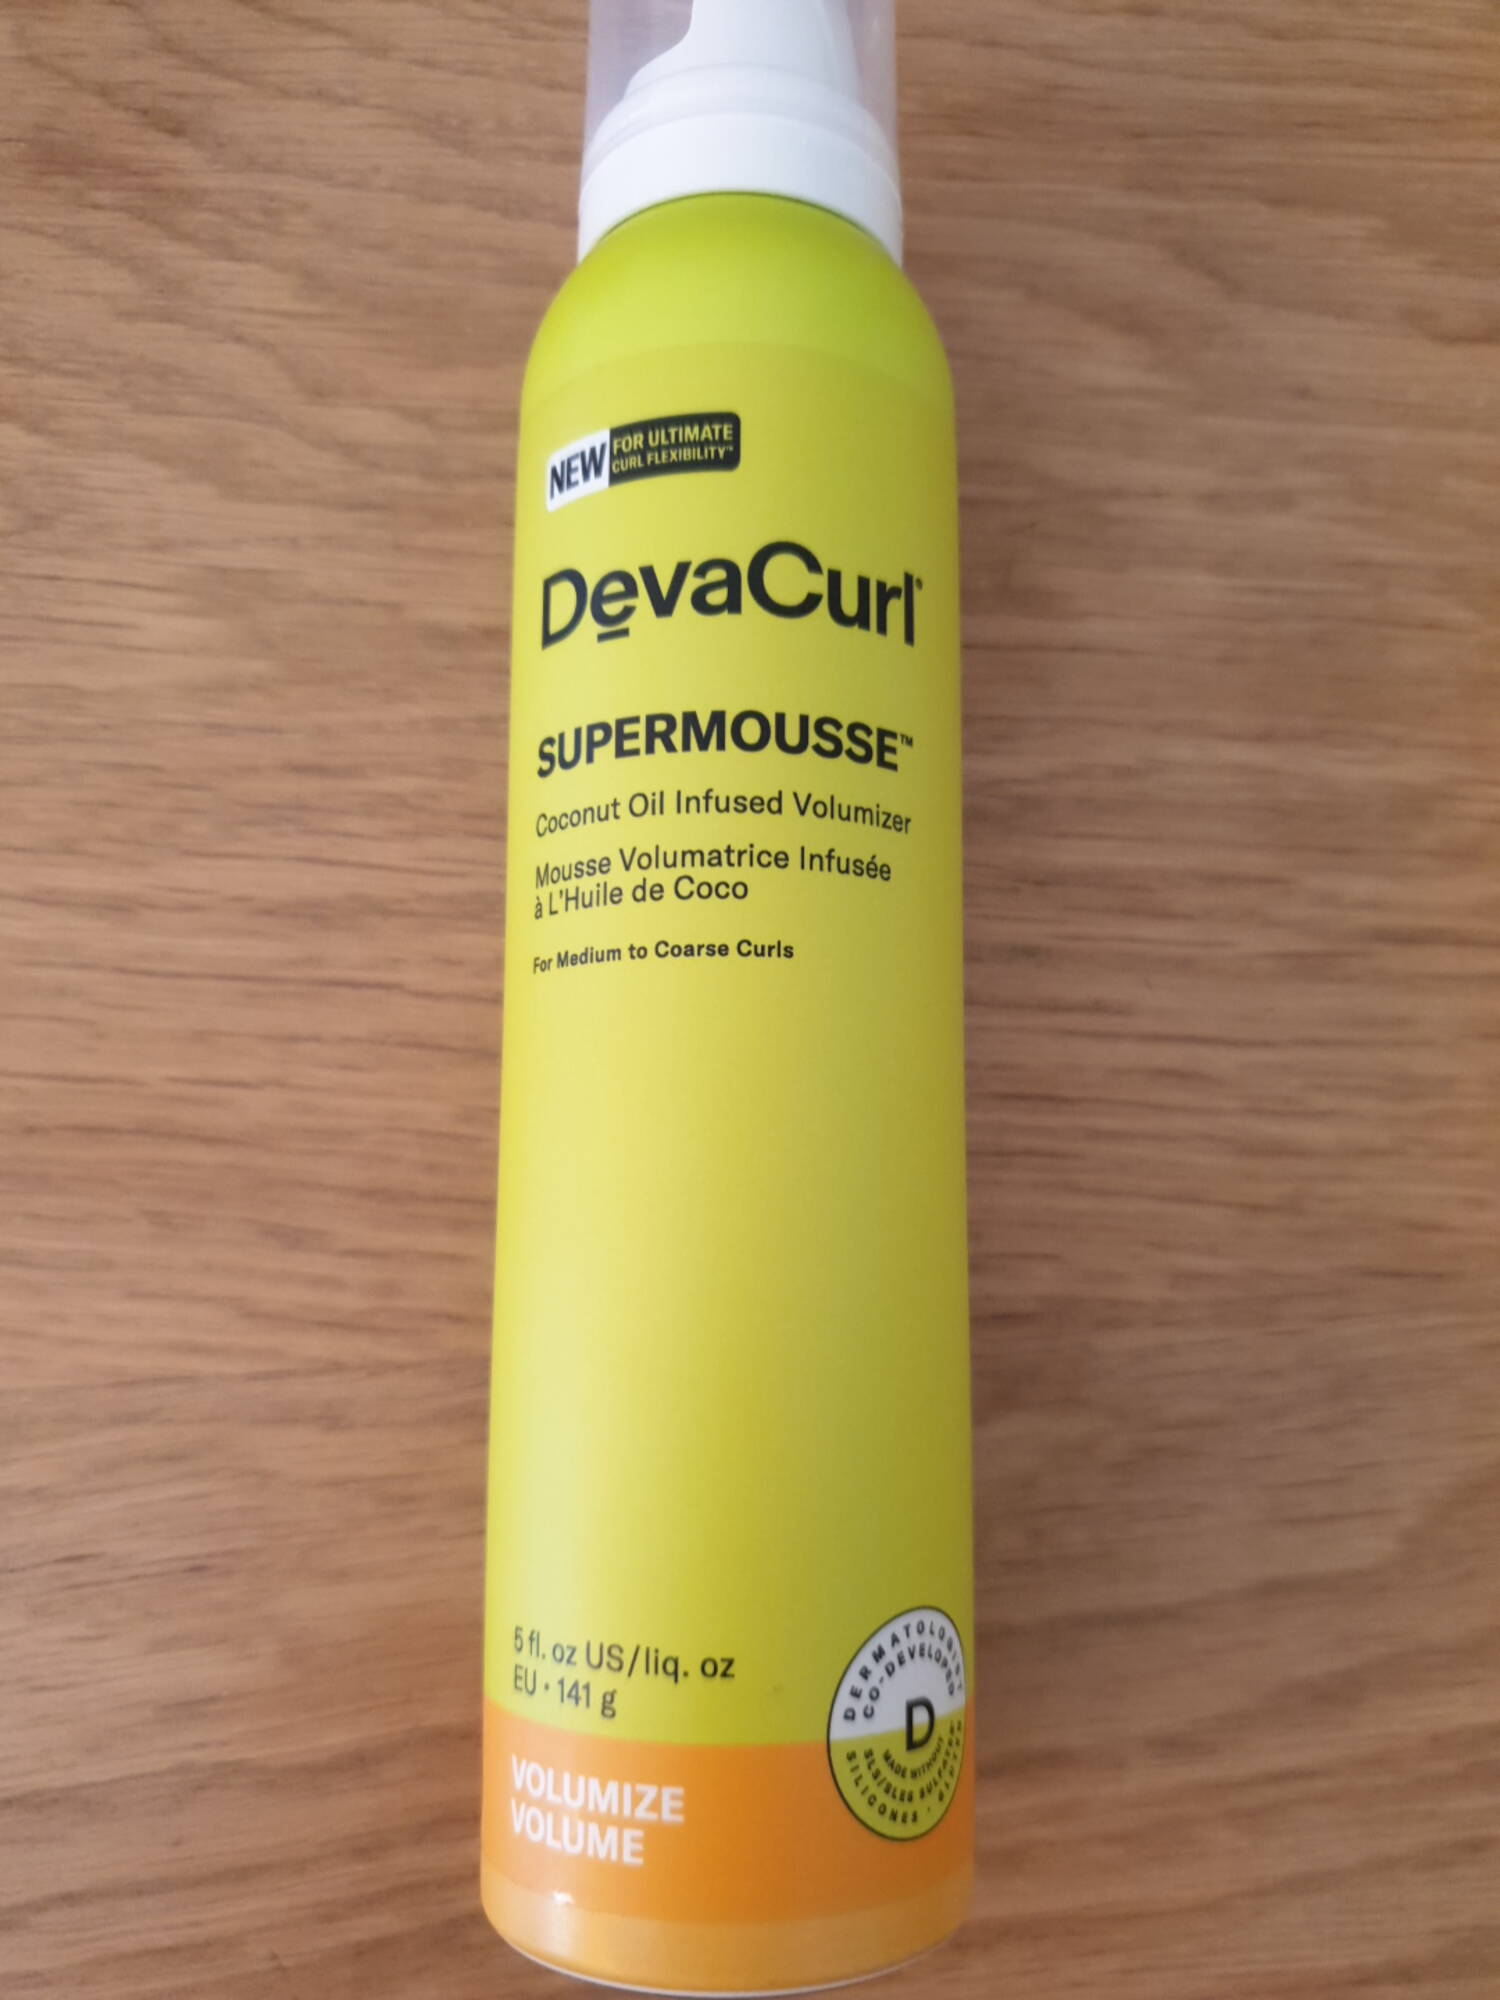 DEVACURL - Supermousse - Mousse volumatrice infusée à l'huile de coco